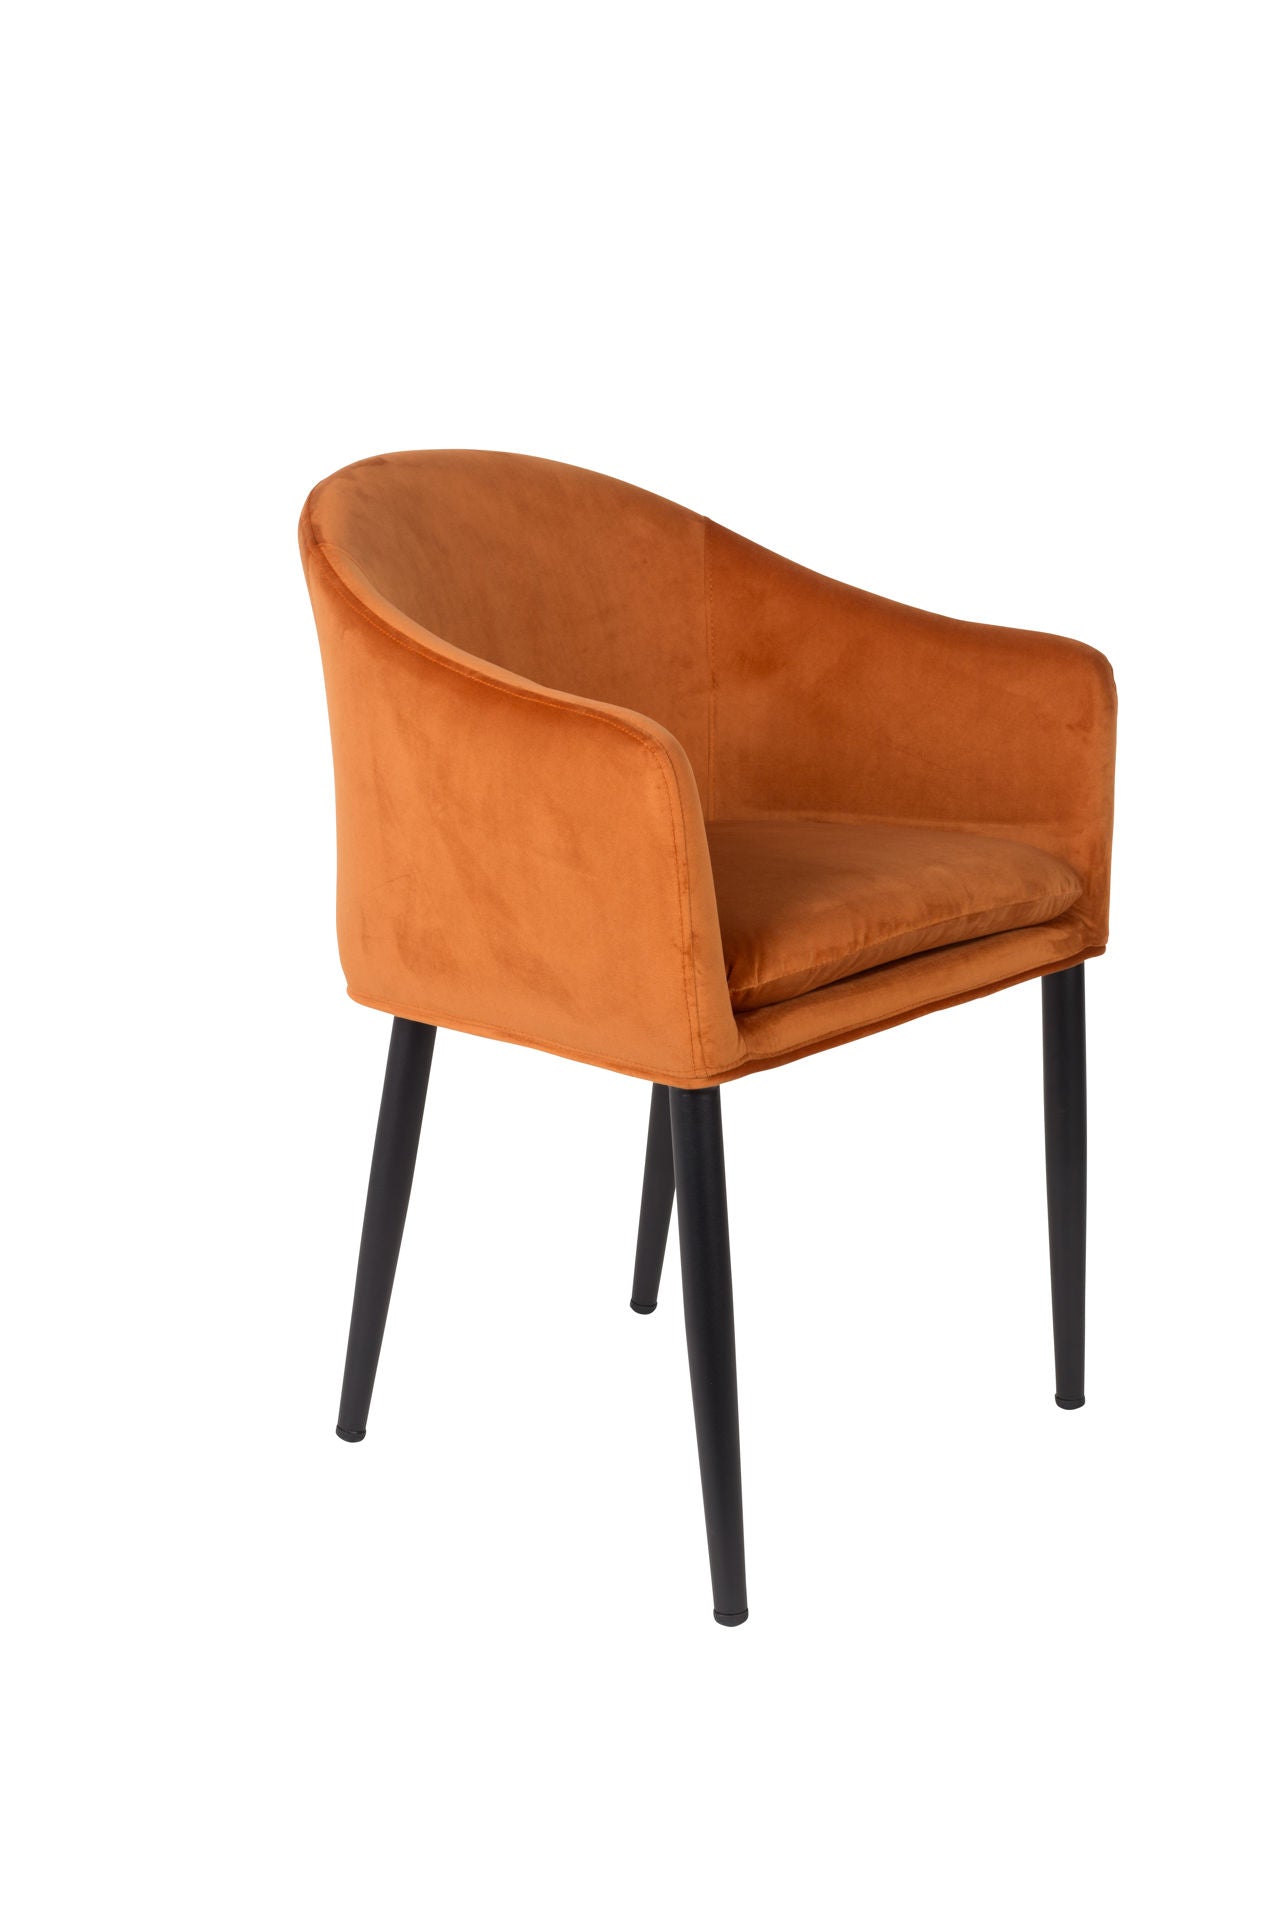 Nancy's Kalifornsky Chair - Retro - Orange, Black - Velvet, Plywood, Steel - 55.5 cm x 57 cm x 77 cm